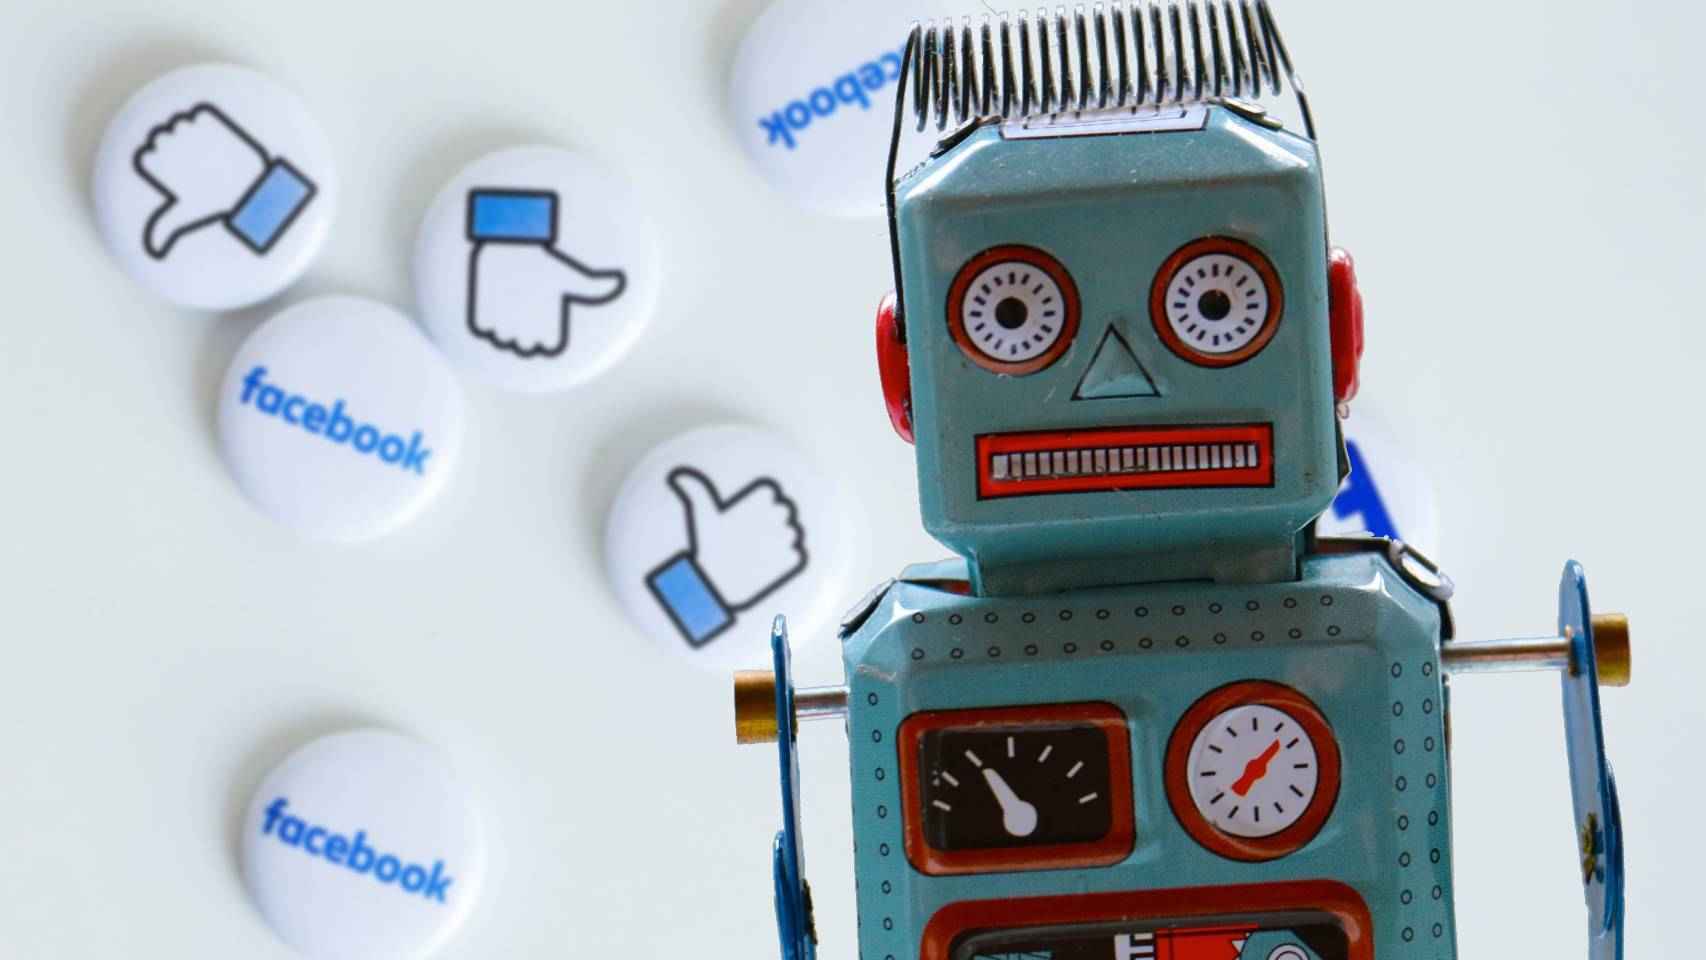 Robot y redes sociales